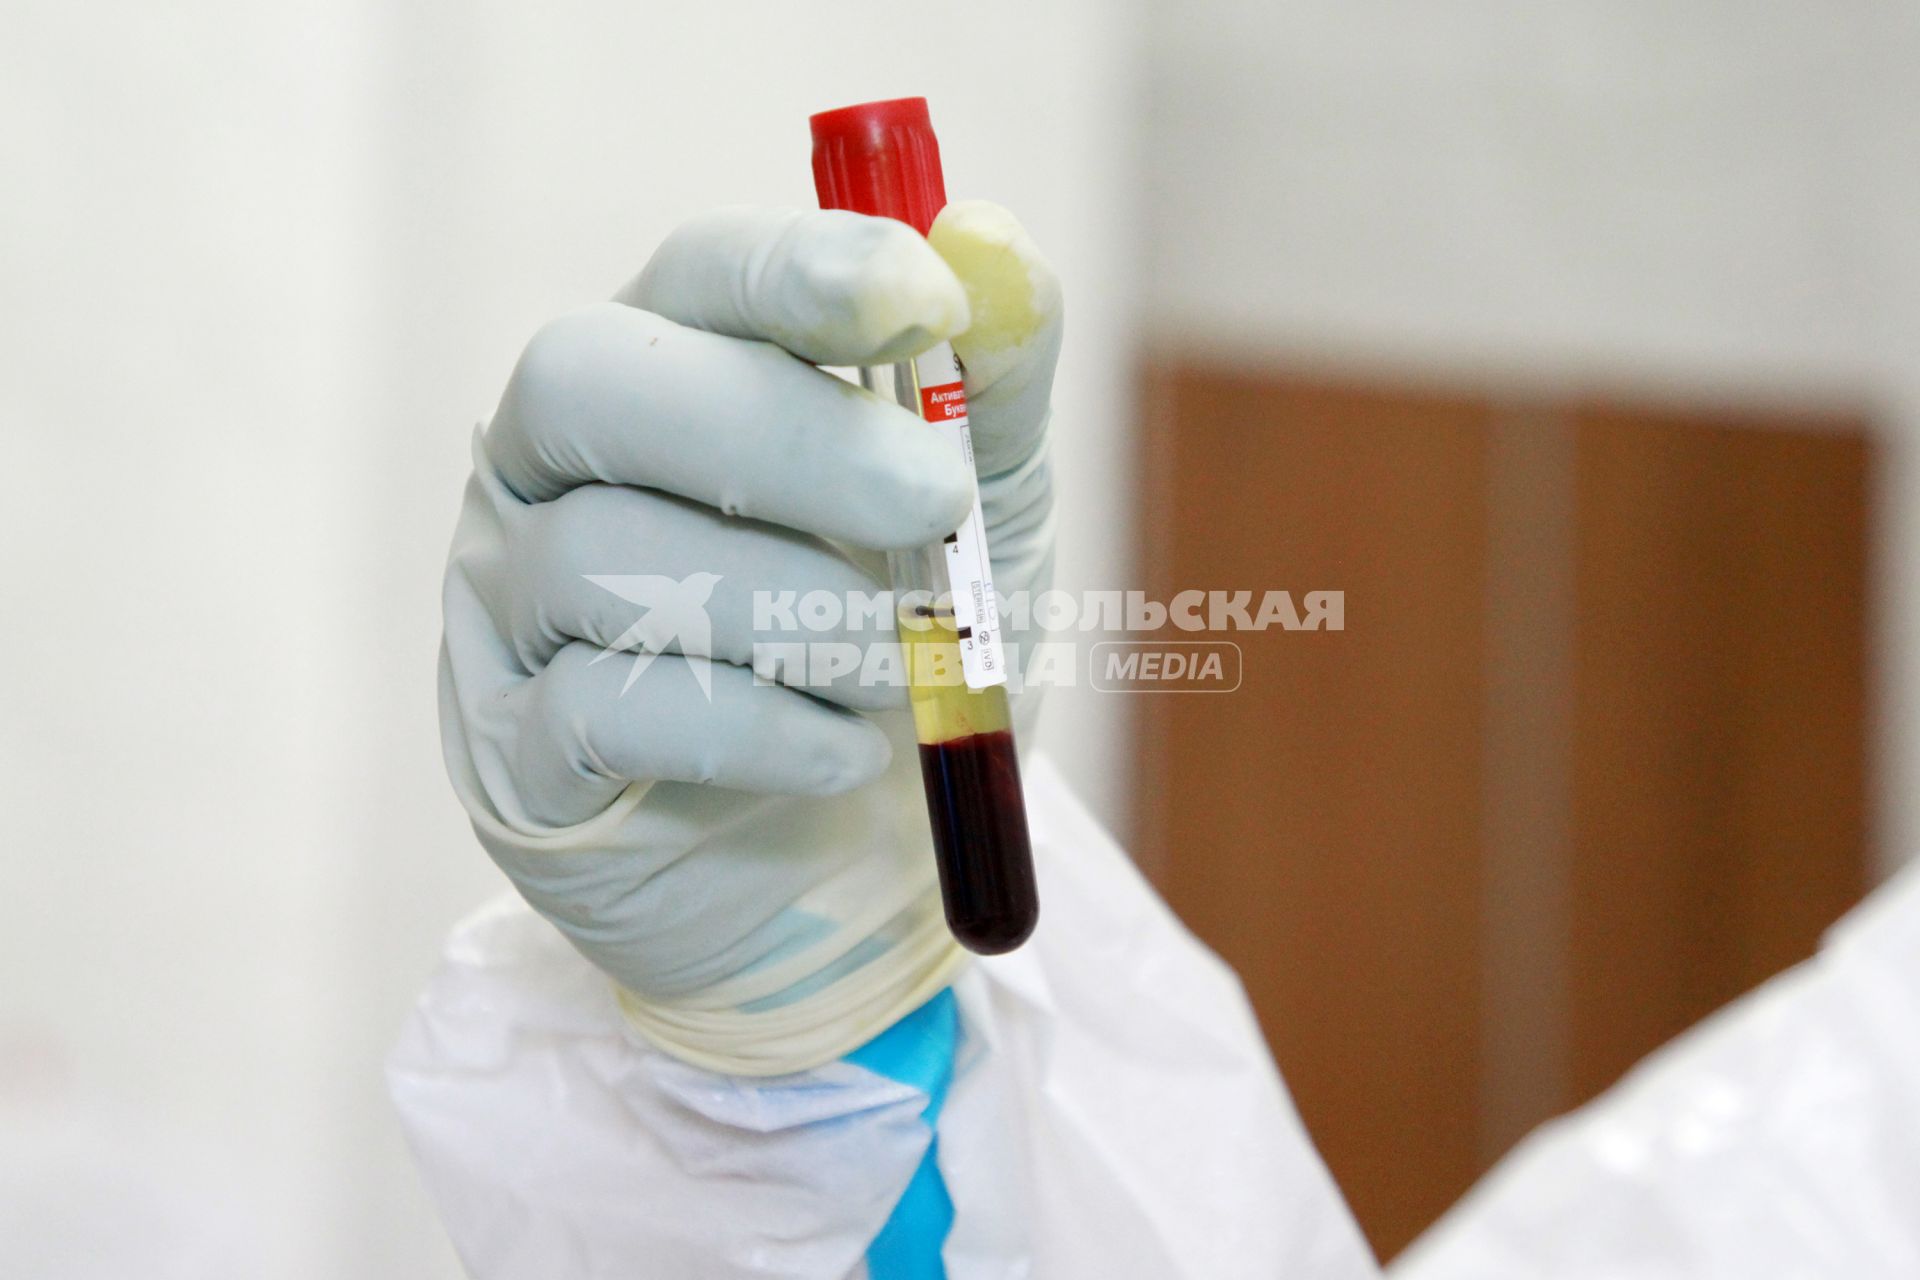 Иркутск. Городская клиническая больница №1. Отделение для зараженных коронавирусной инфекцией COVID-19. На снимке: сотрудник лаборатории держит в руках пробирку с биоматериалом.